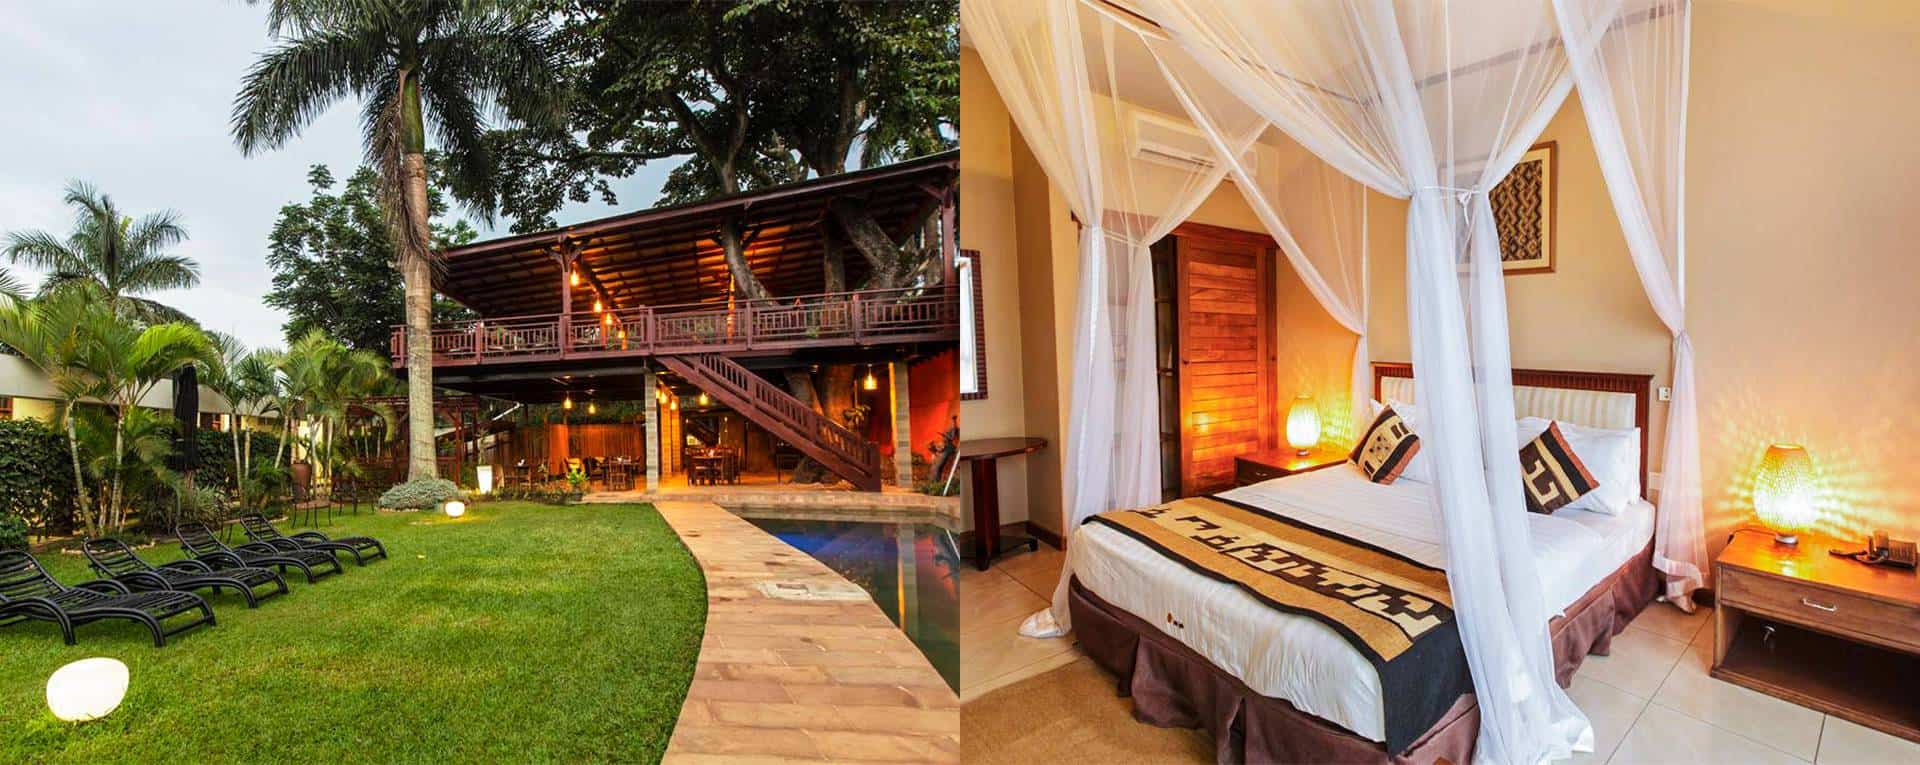 Best resorts in uganda